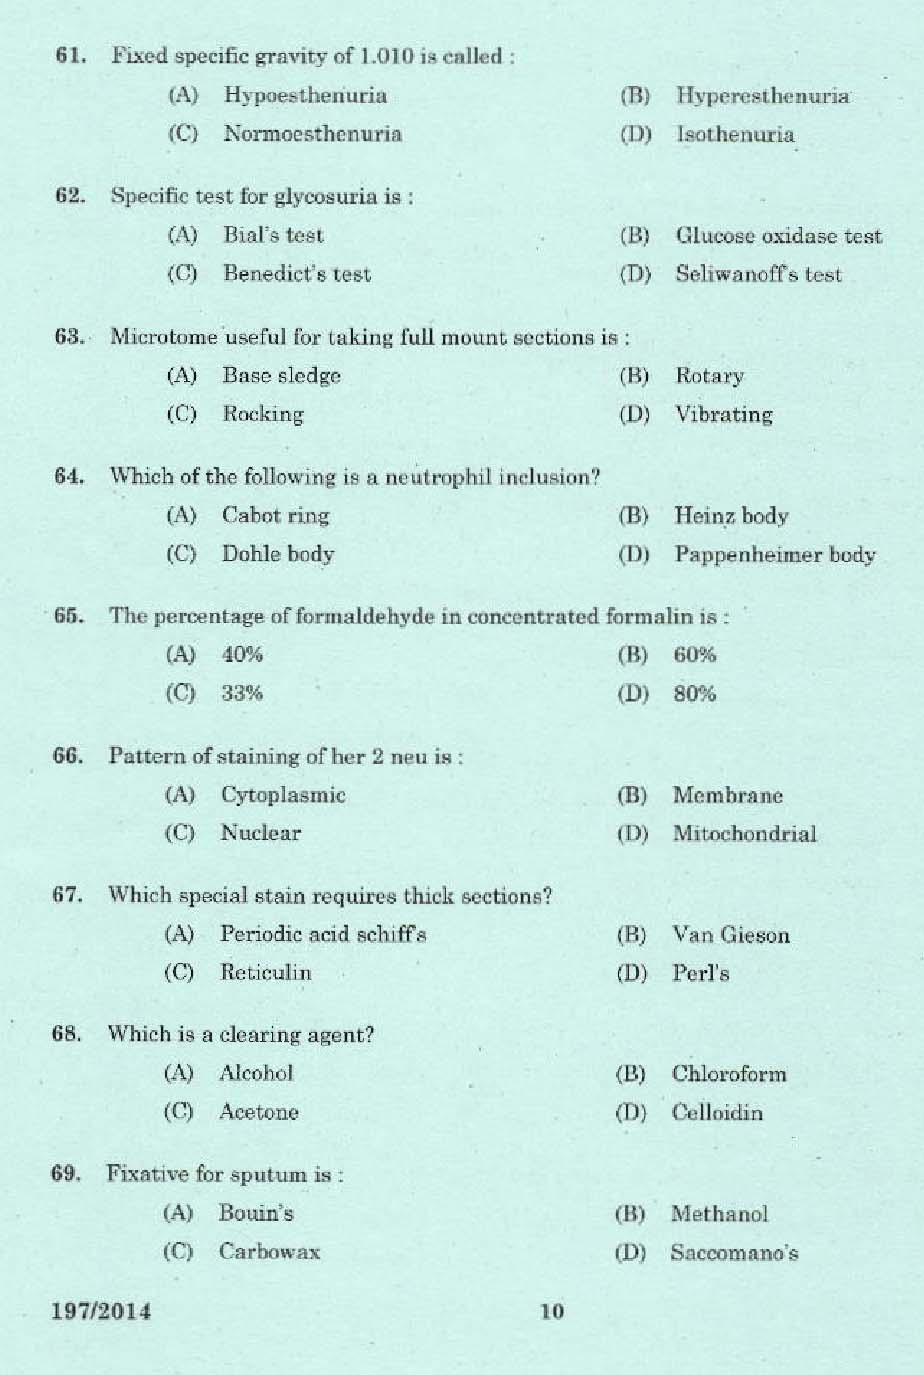 KPSC Junior Scientific Officer Exam 2014 Code 1972014 8